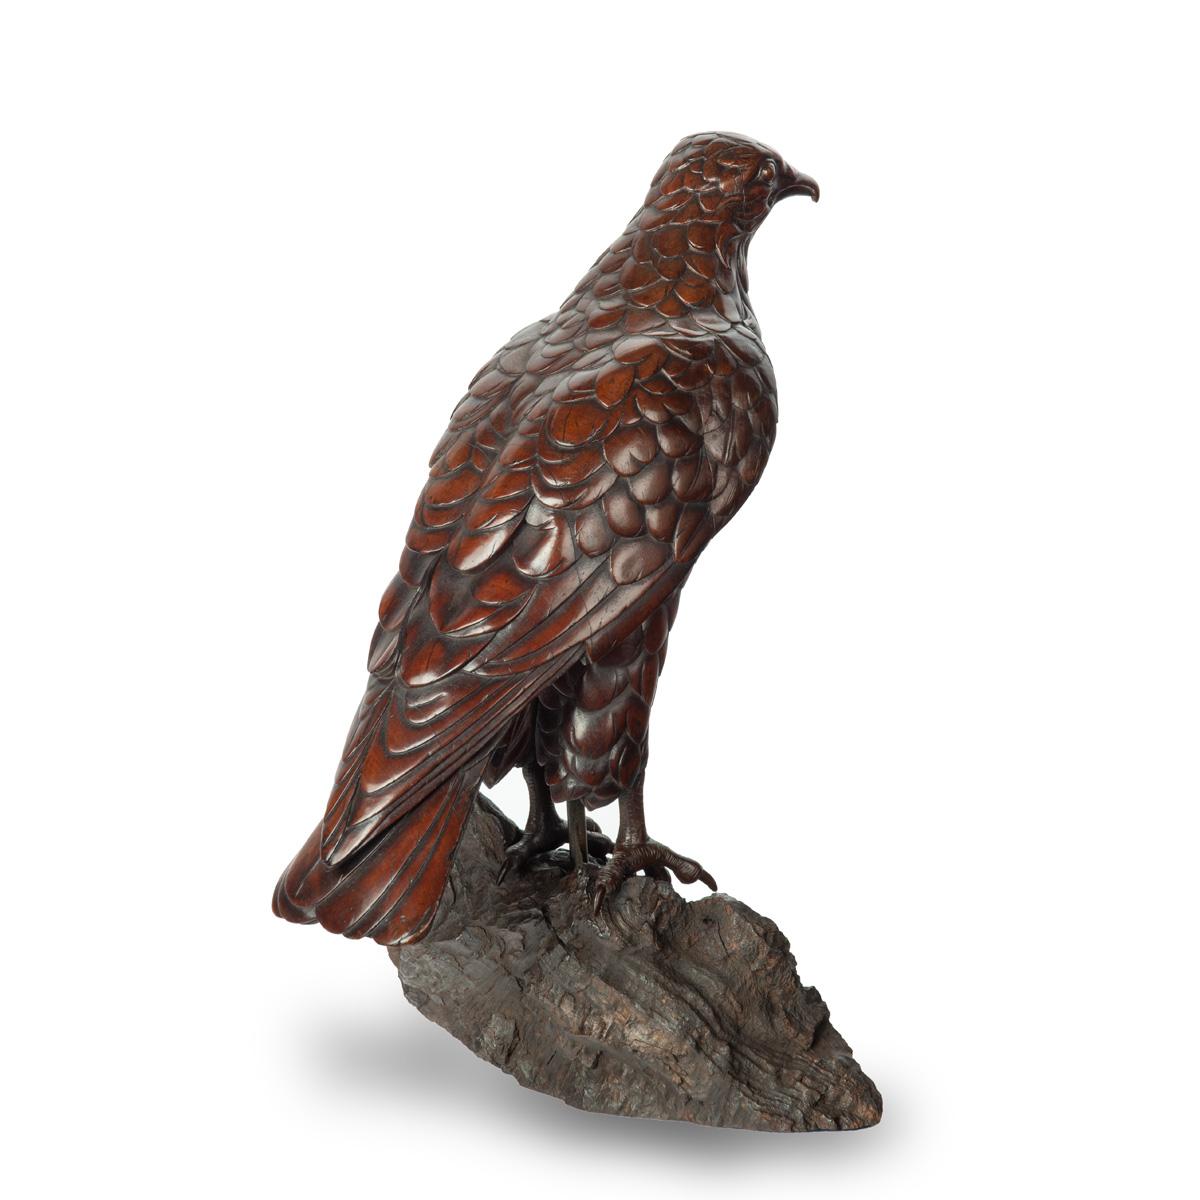 Modèle en bois de tilleul de la Forêt-Noire représentant un faucon, debout, les ailes repliées, sur un affleurement rocheux.  Suisse, vers 1910.

